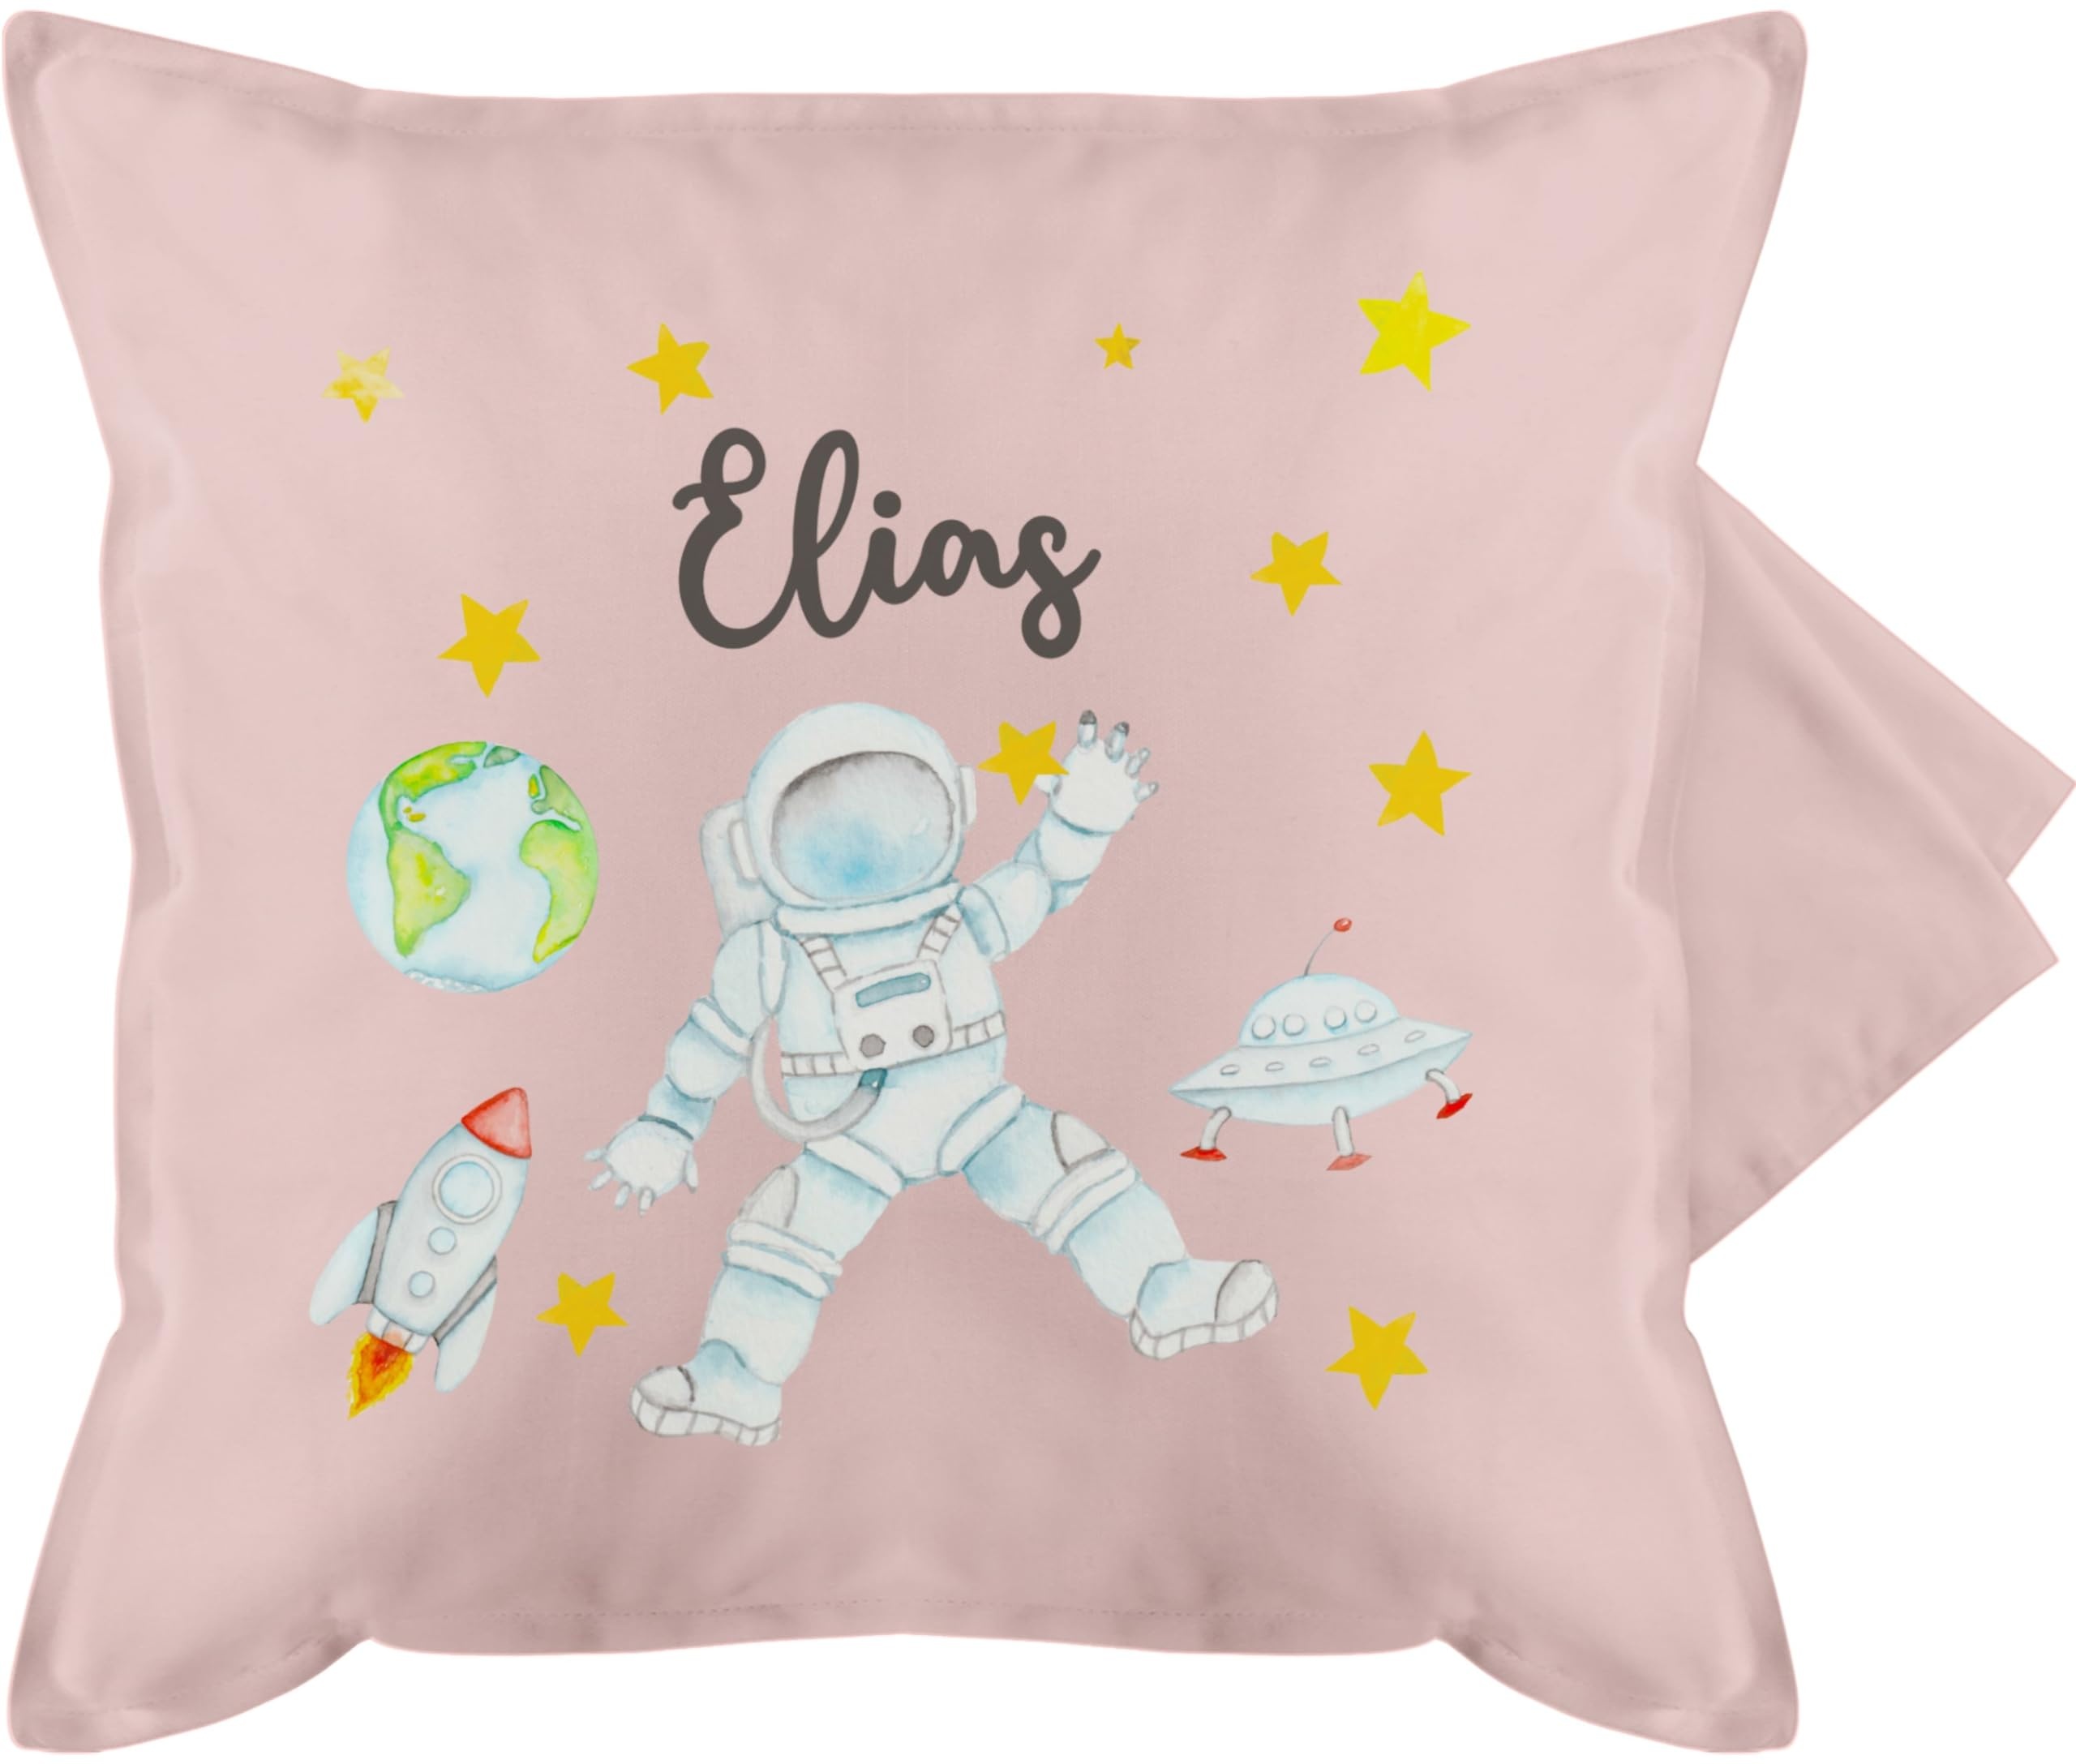 Kissenbezug - Weltall - Astronaut Kinder Raumfahrt Weltraum Planet Geschenk - 50 x 50 cm - Hellrosa - Astronauten Name Kissen Rakete NASA Planeten